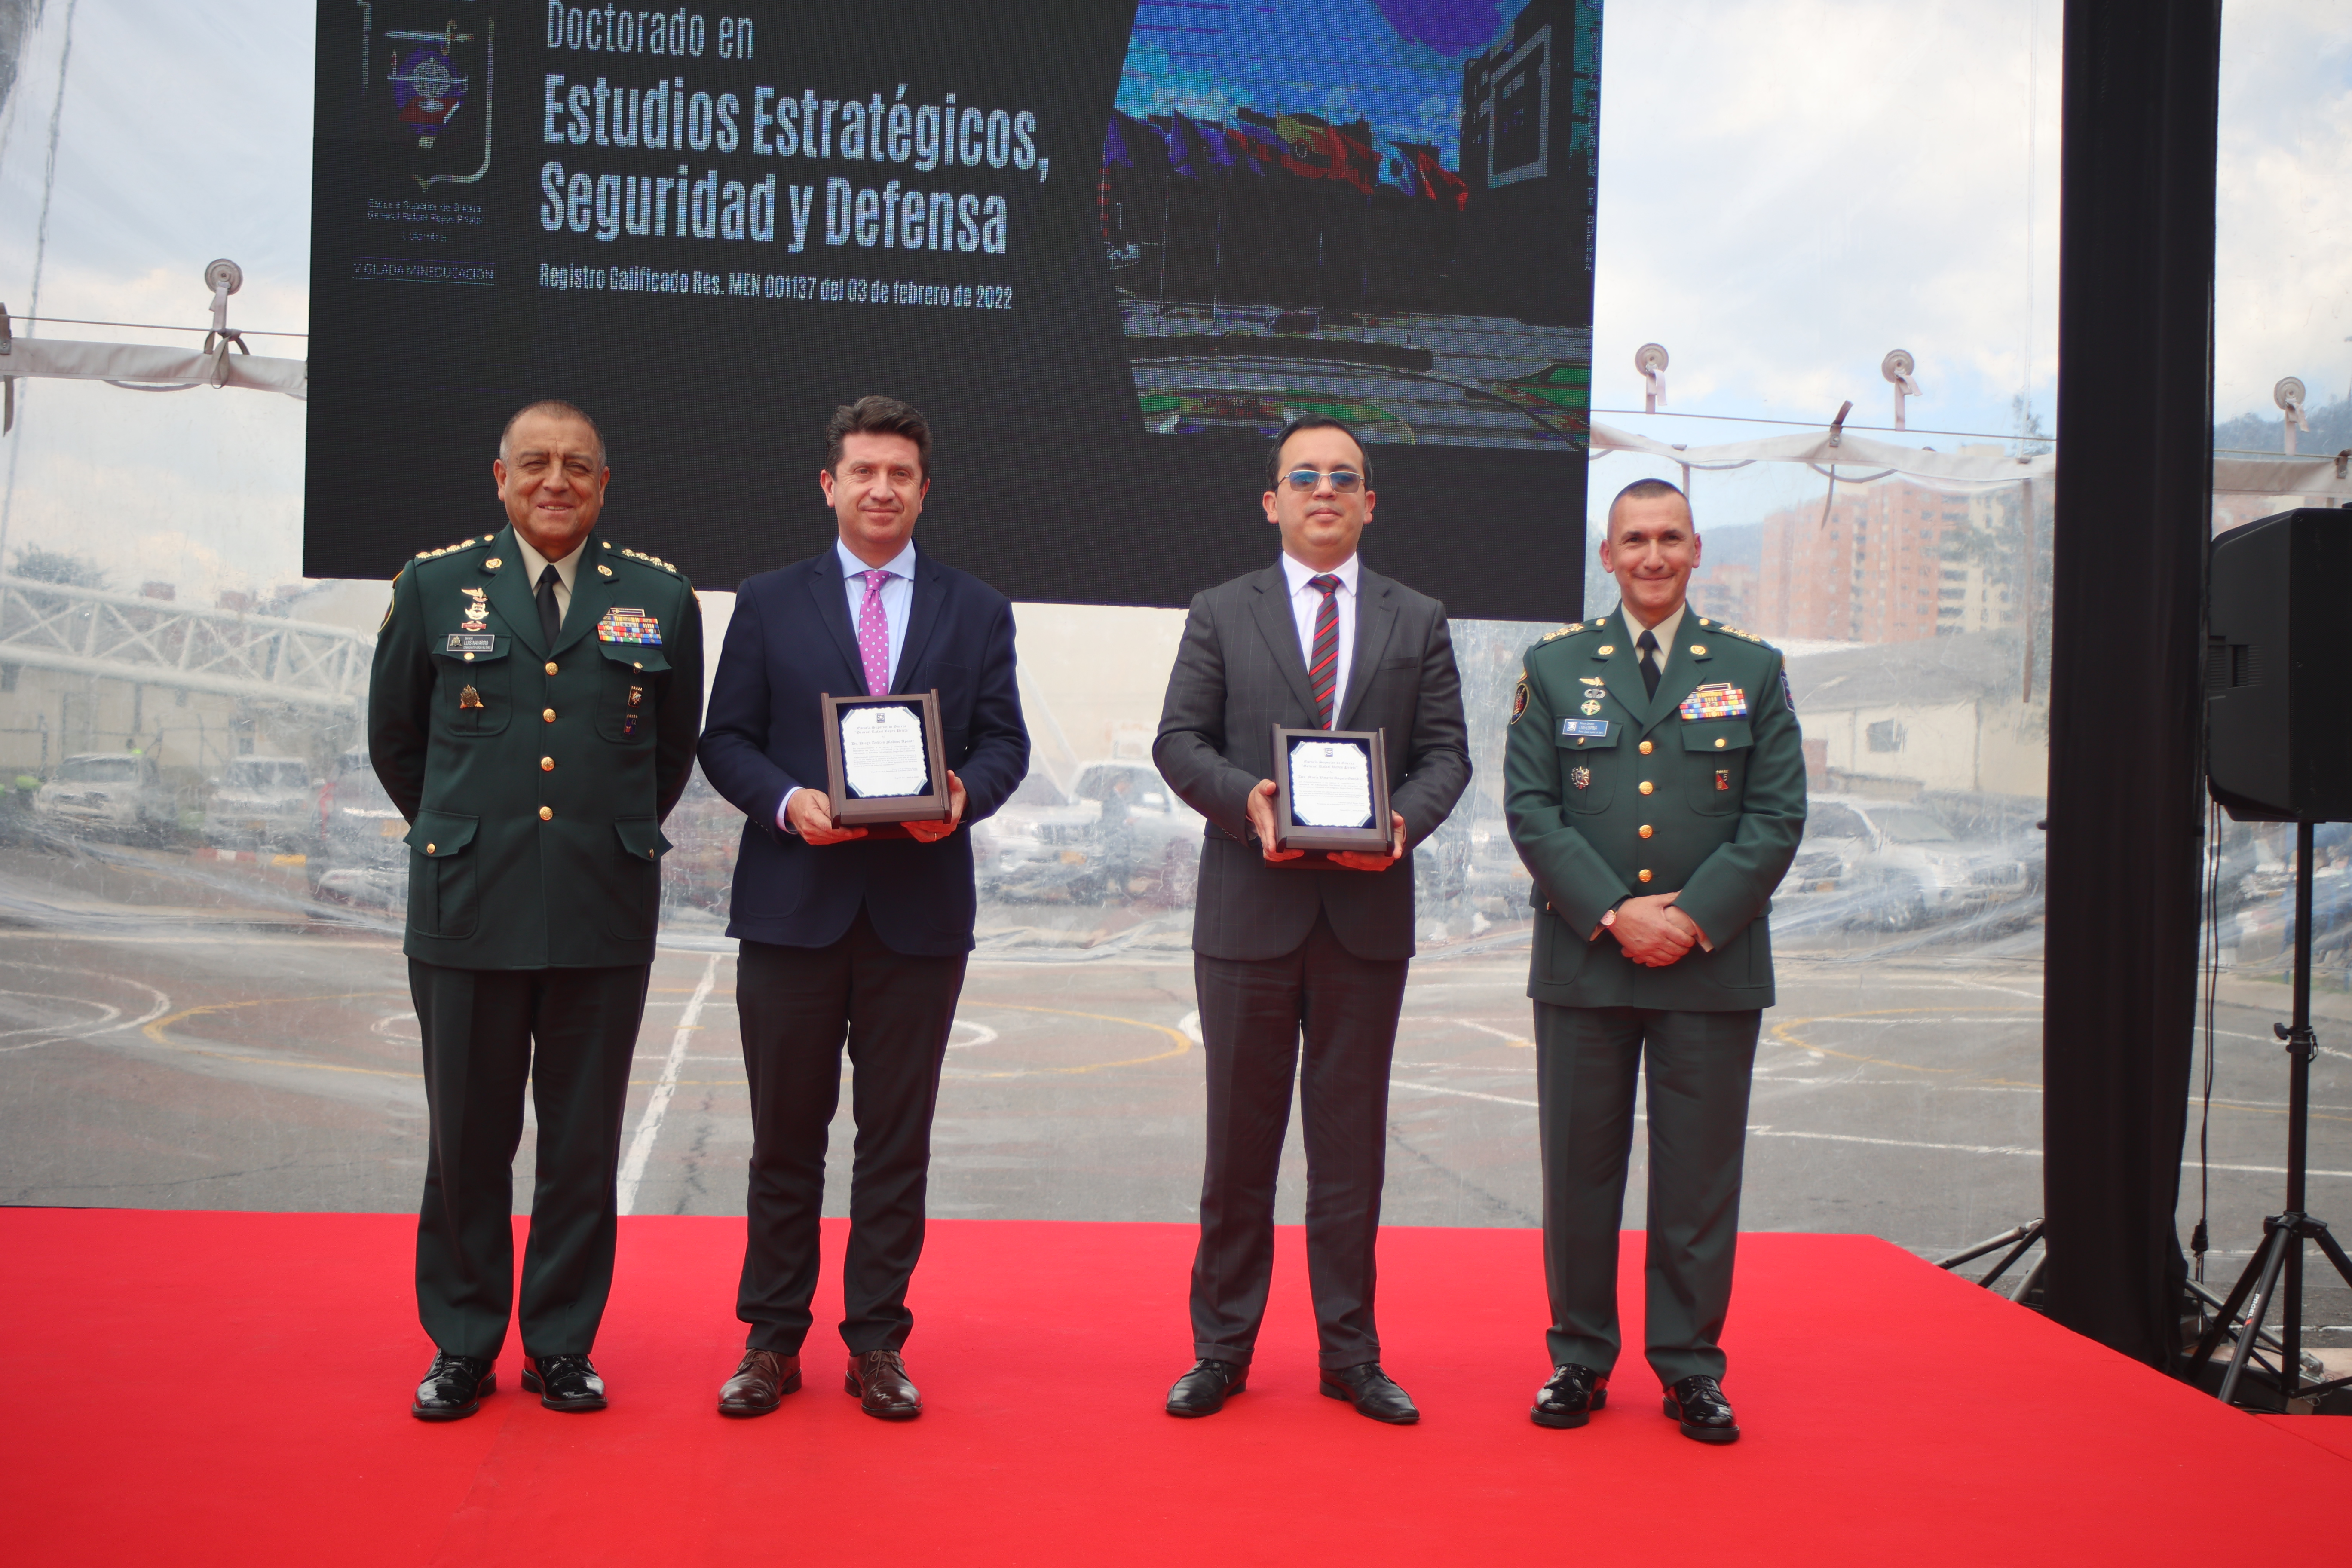 Ceremonia de presentación del Doctorado en Estudios Estratégicos, Seguridad y Defensa 